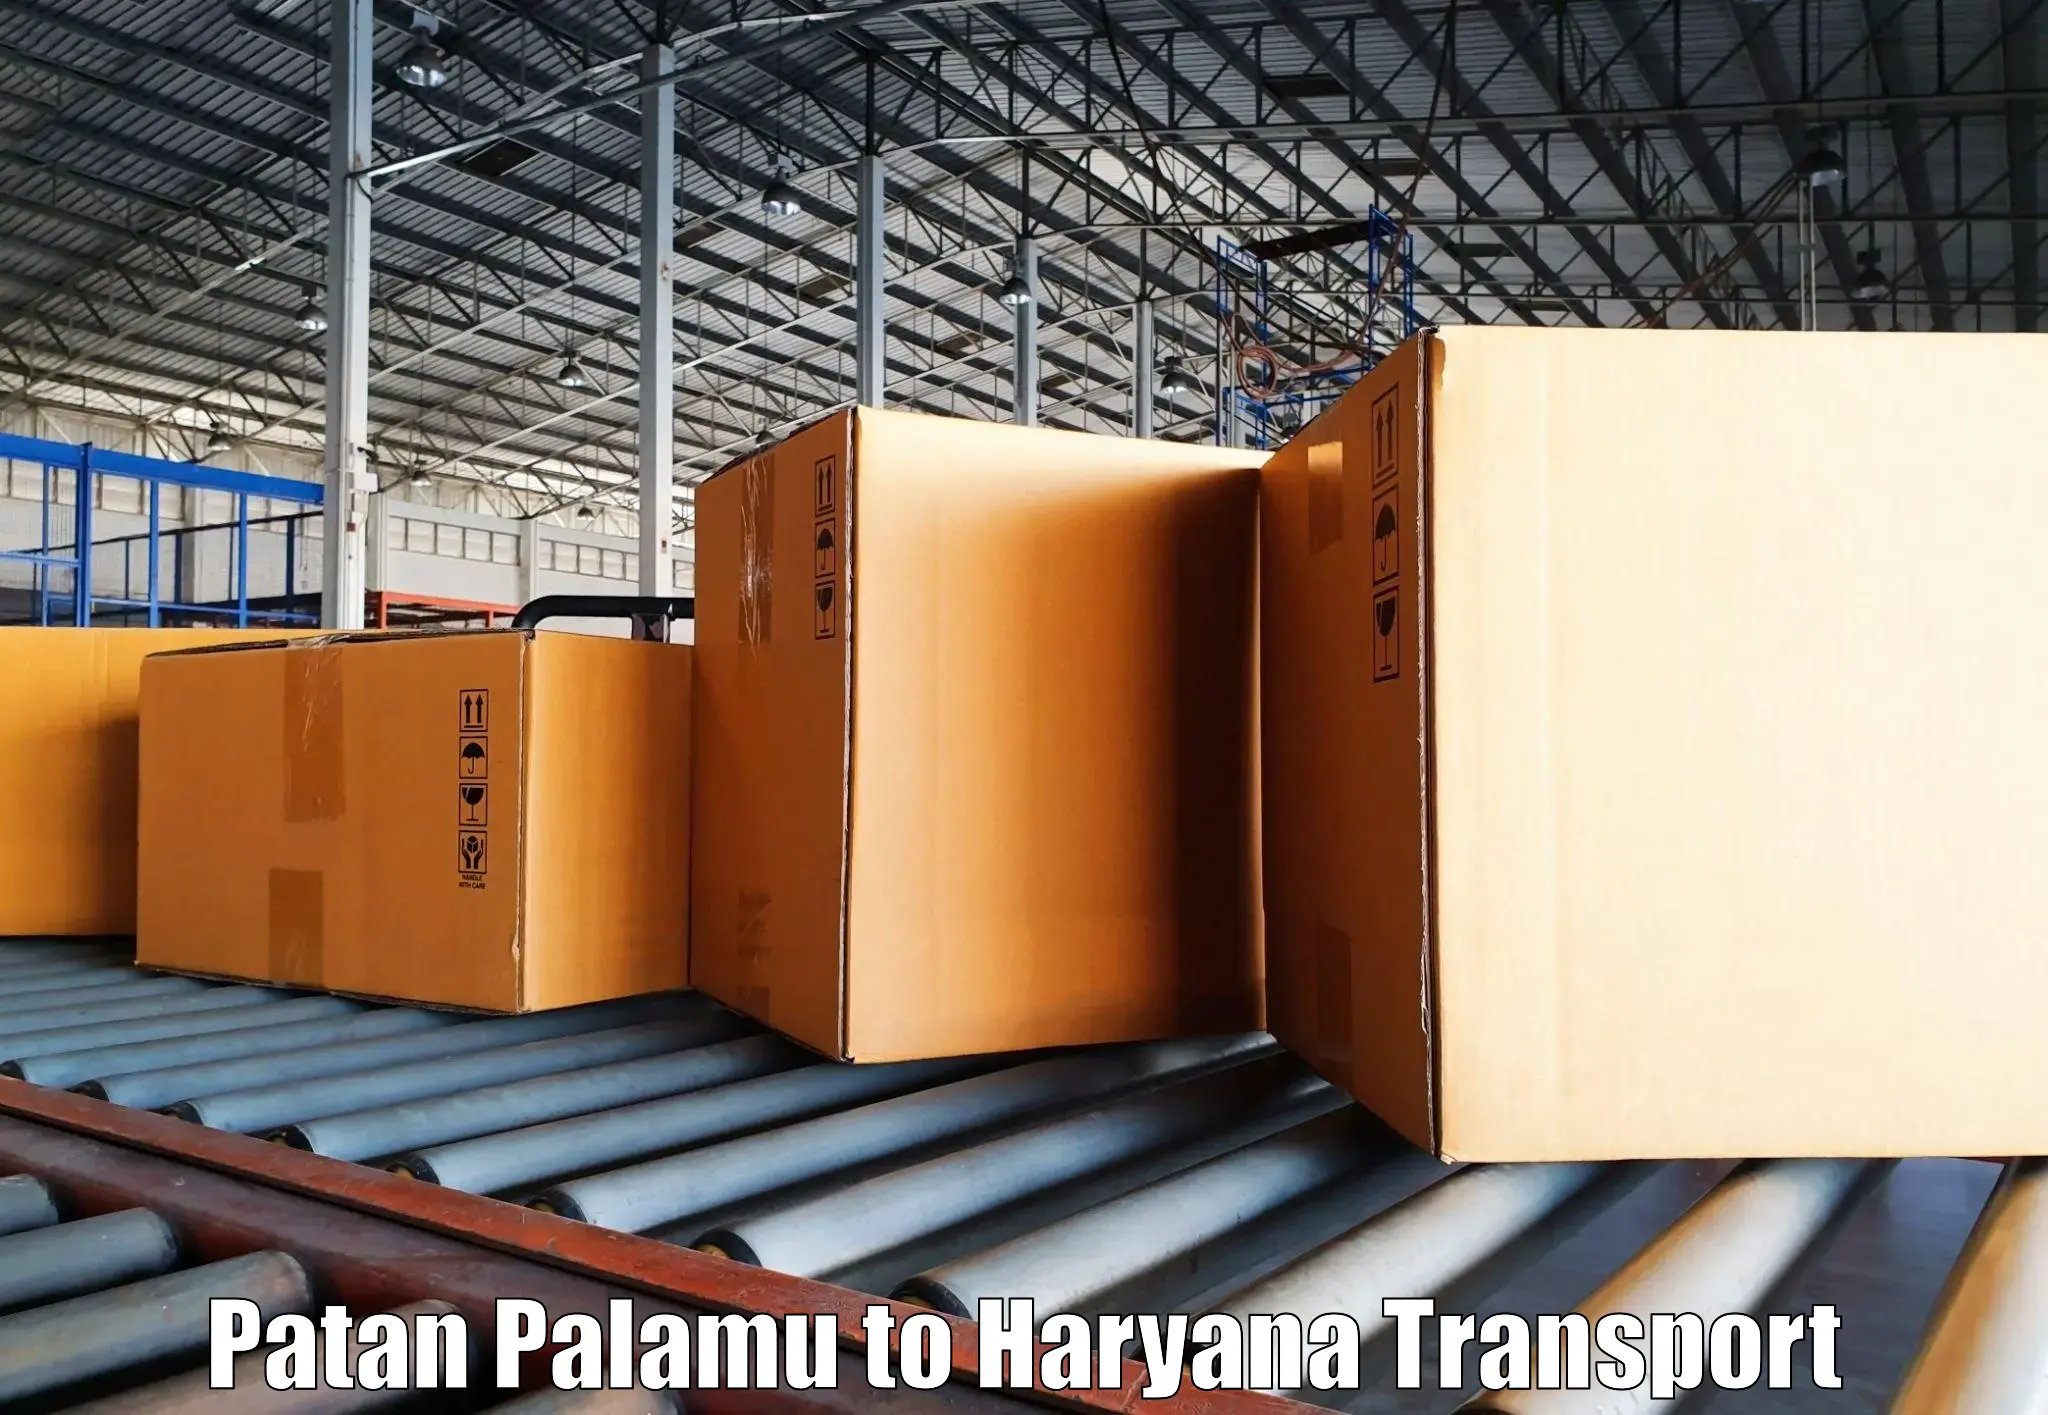 Daily parcel service transport Patan Palamu to Faridabad